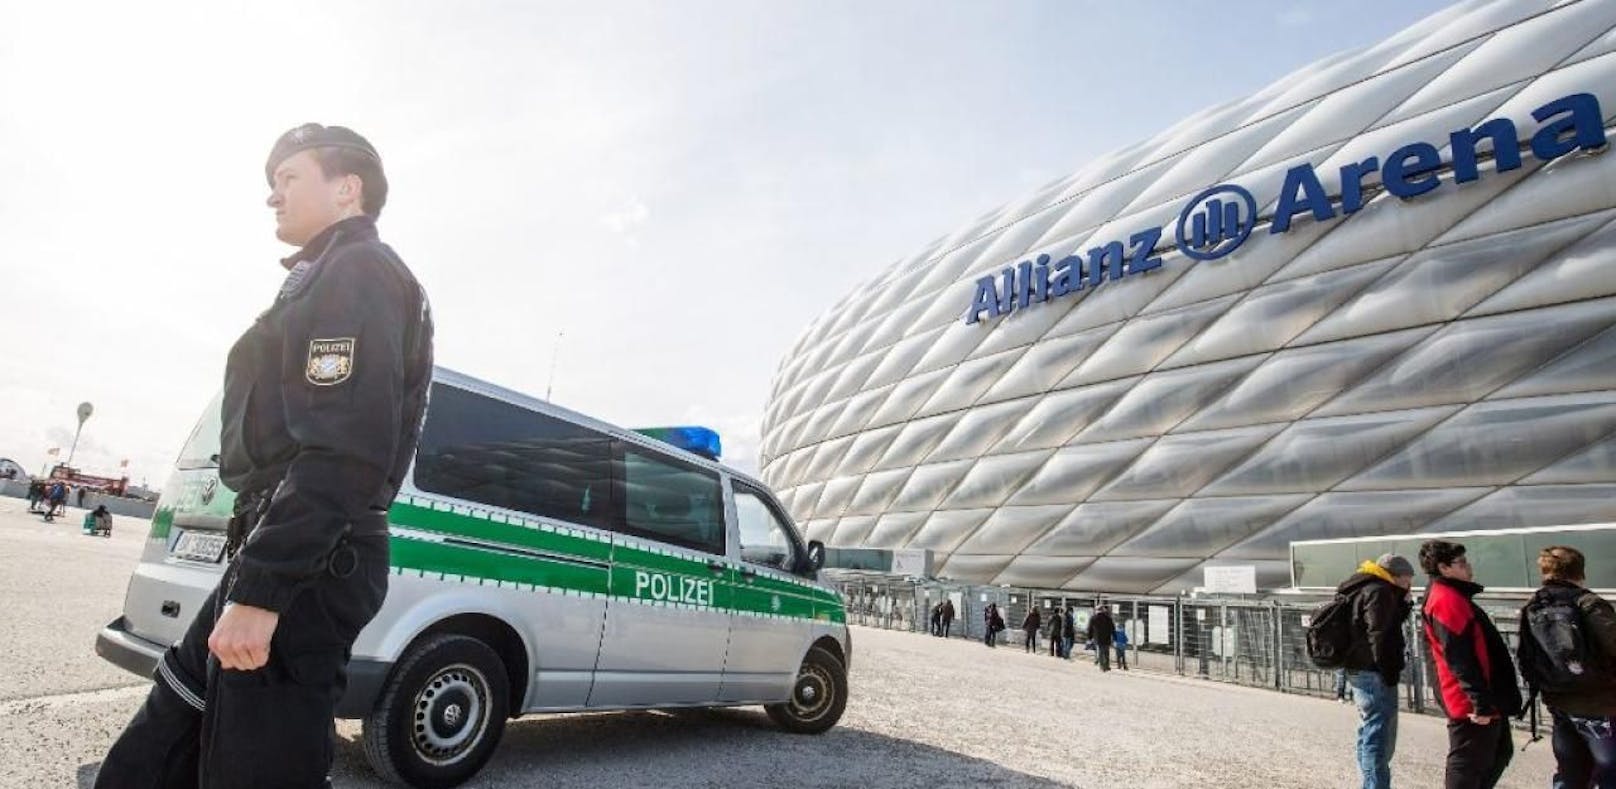 Die Allianz Arena in München. (Symbolbild)